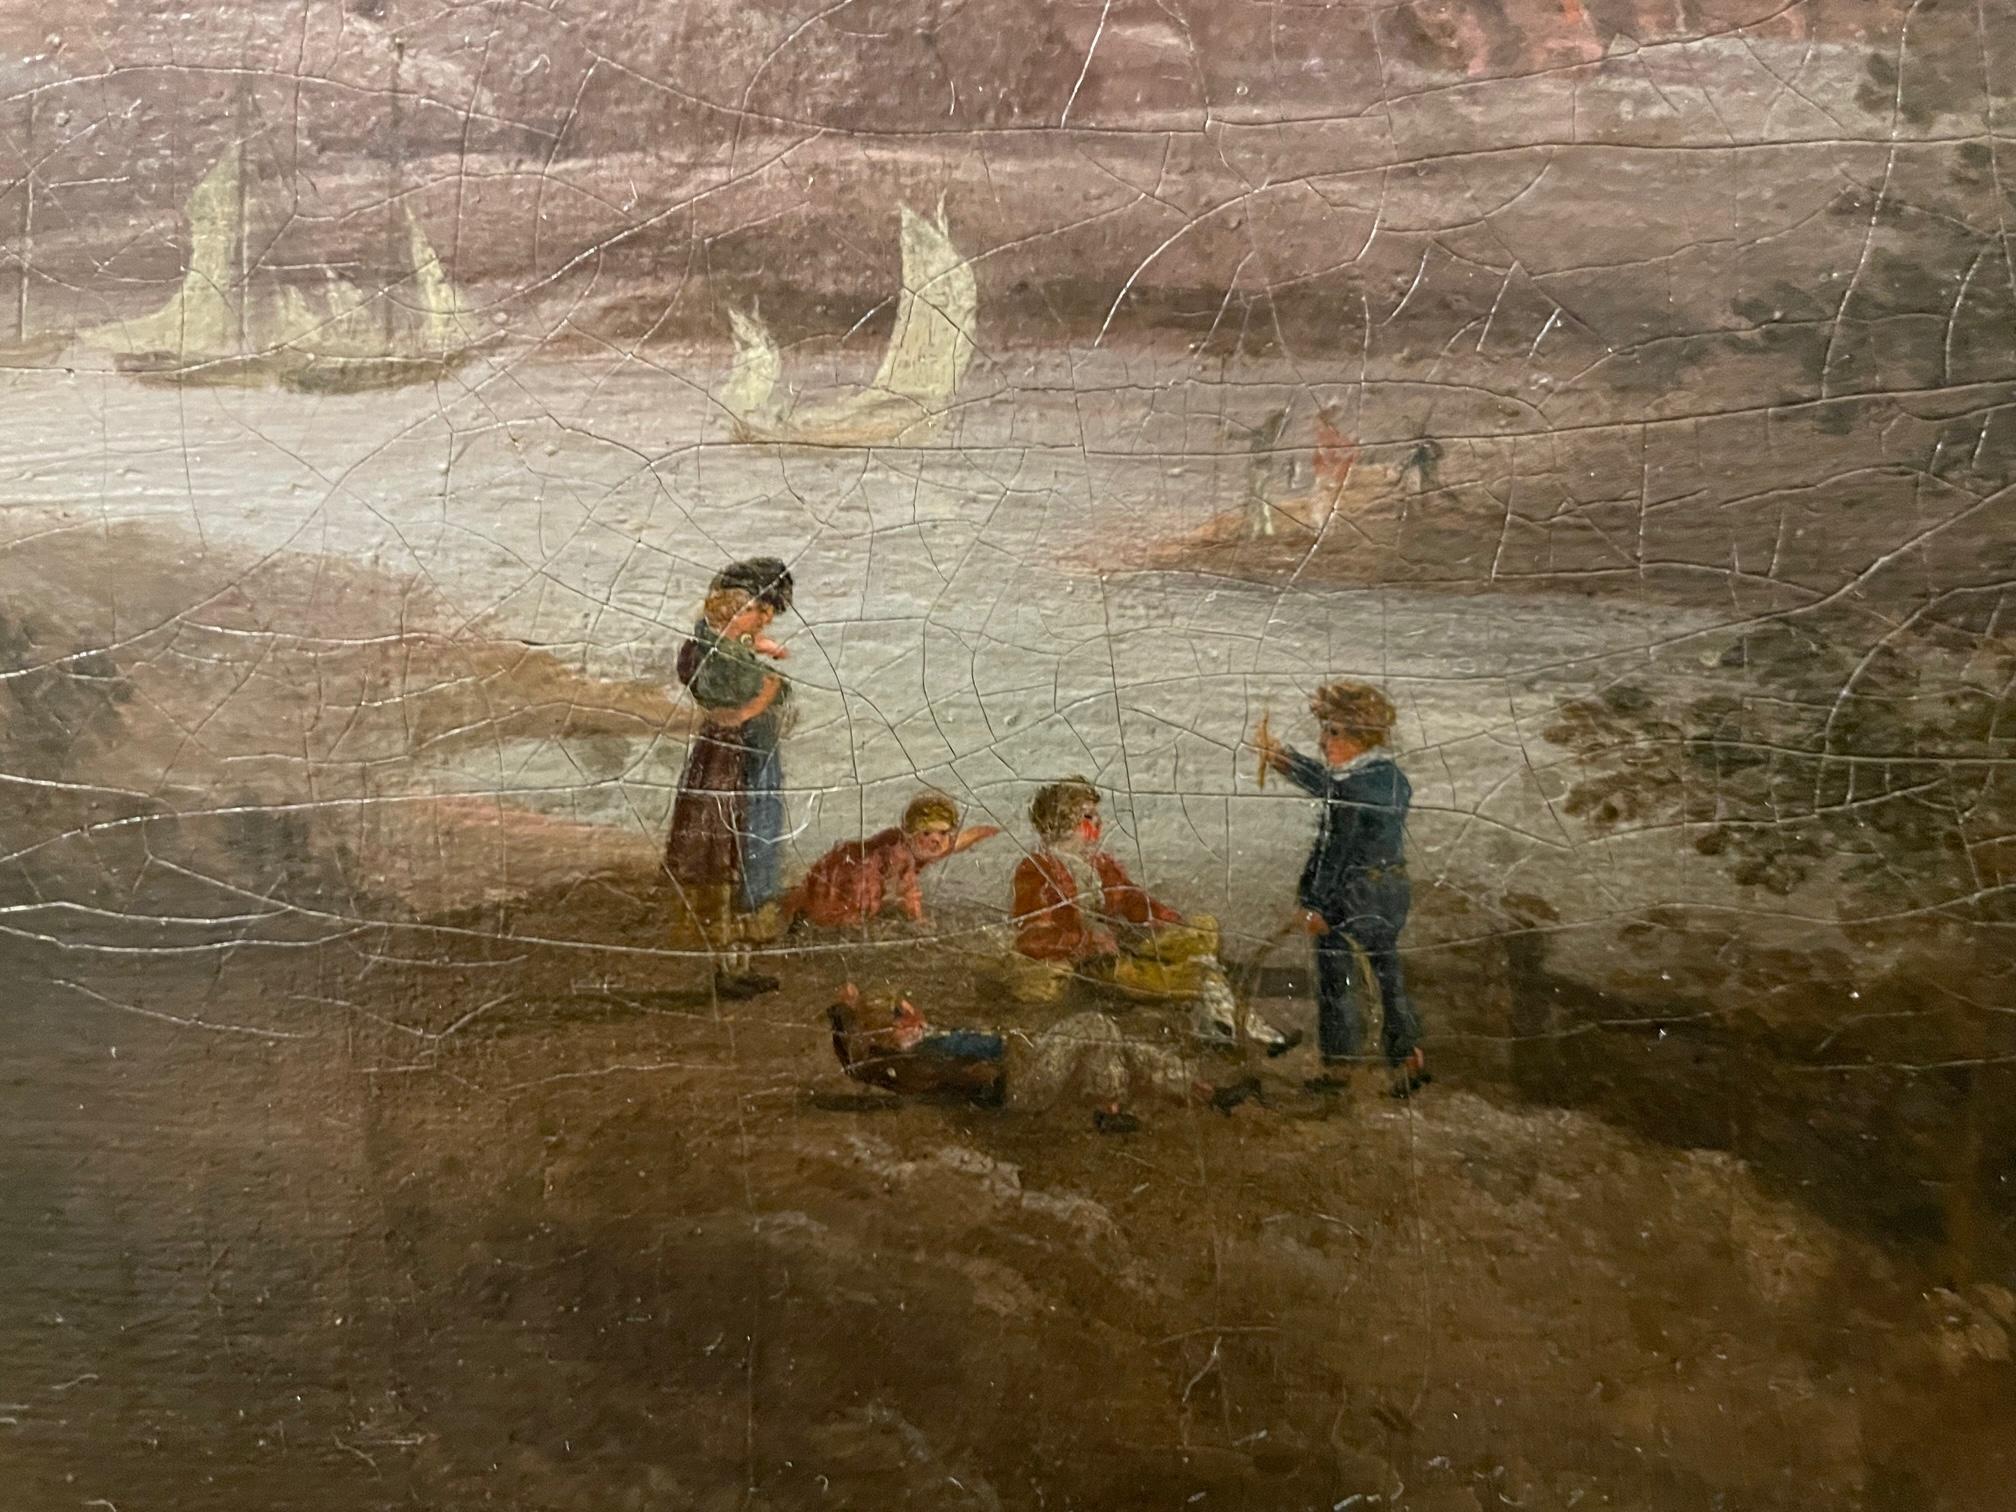 Alexander Nasmyth (1758-1840) ist ein berühmter schottischer Künstler und früher Plein-Art-Landschaftsmaler, dessen sechs Kinder ebenfalls bekannte Künstler wurden. Die Arbeit von Nasmyth wird sehr geschätzt. Dieses Gemälde wird der Zeit